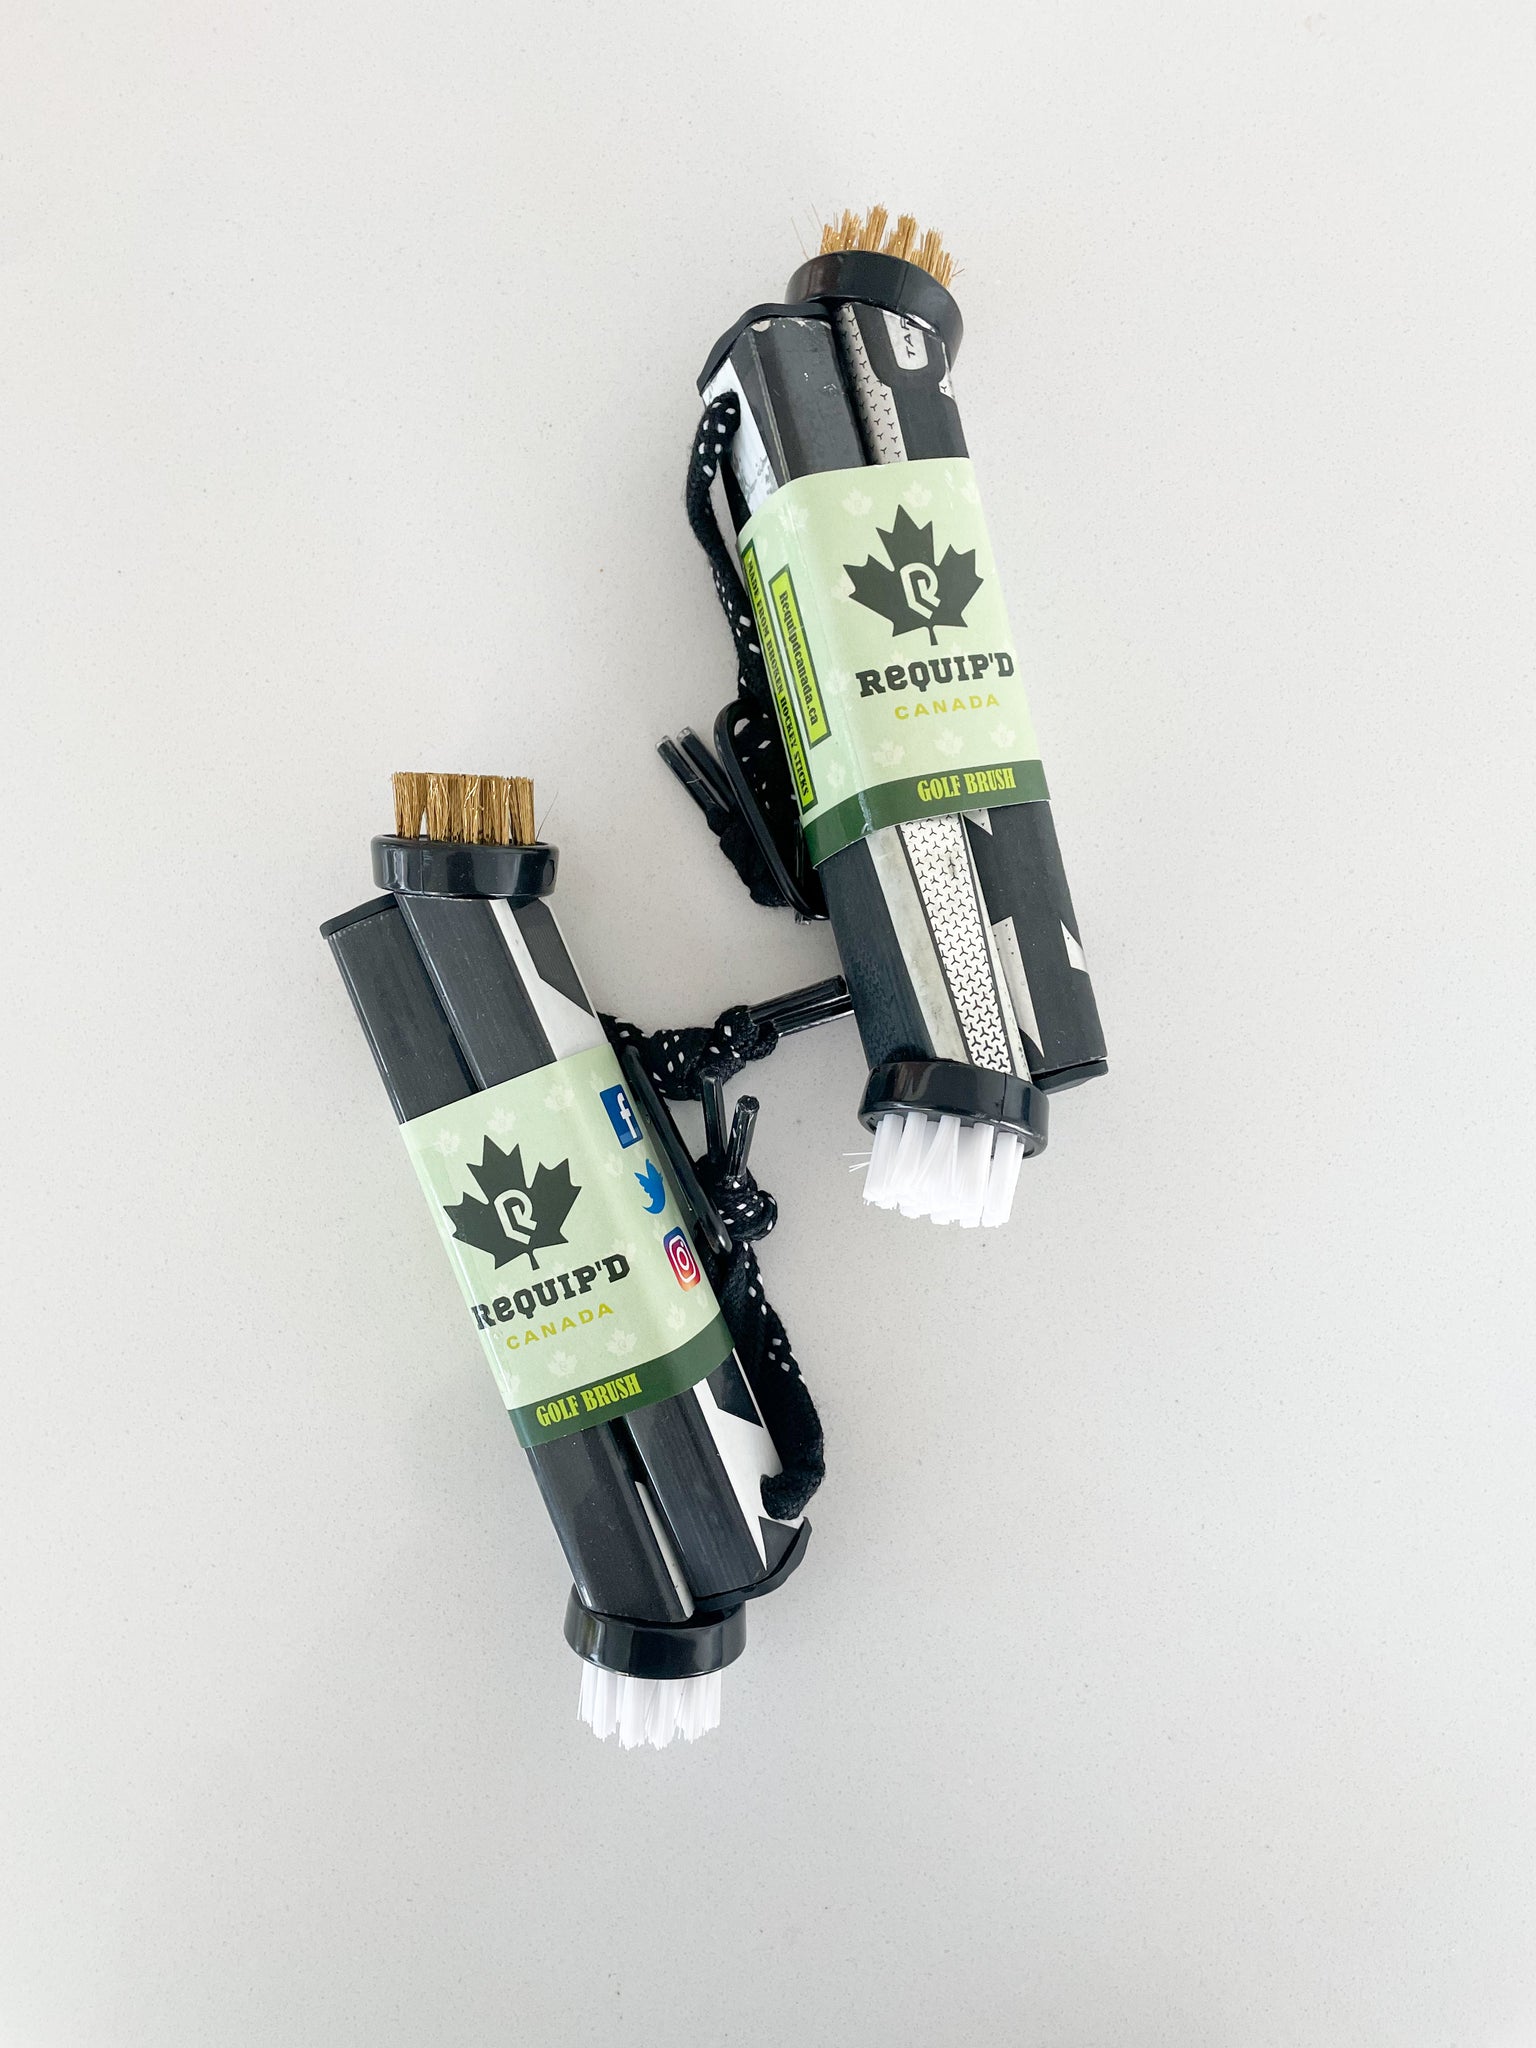 Golf Brushes - Up-cycled Hockey Sticks